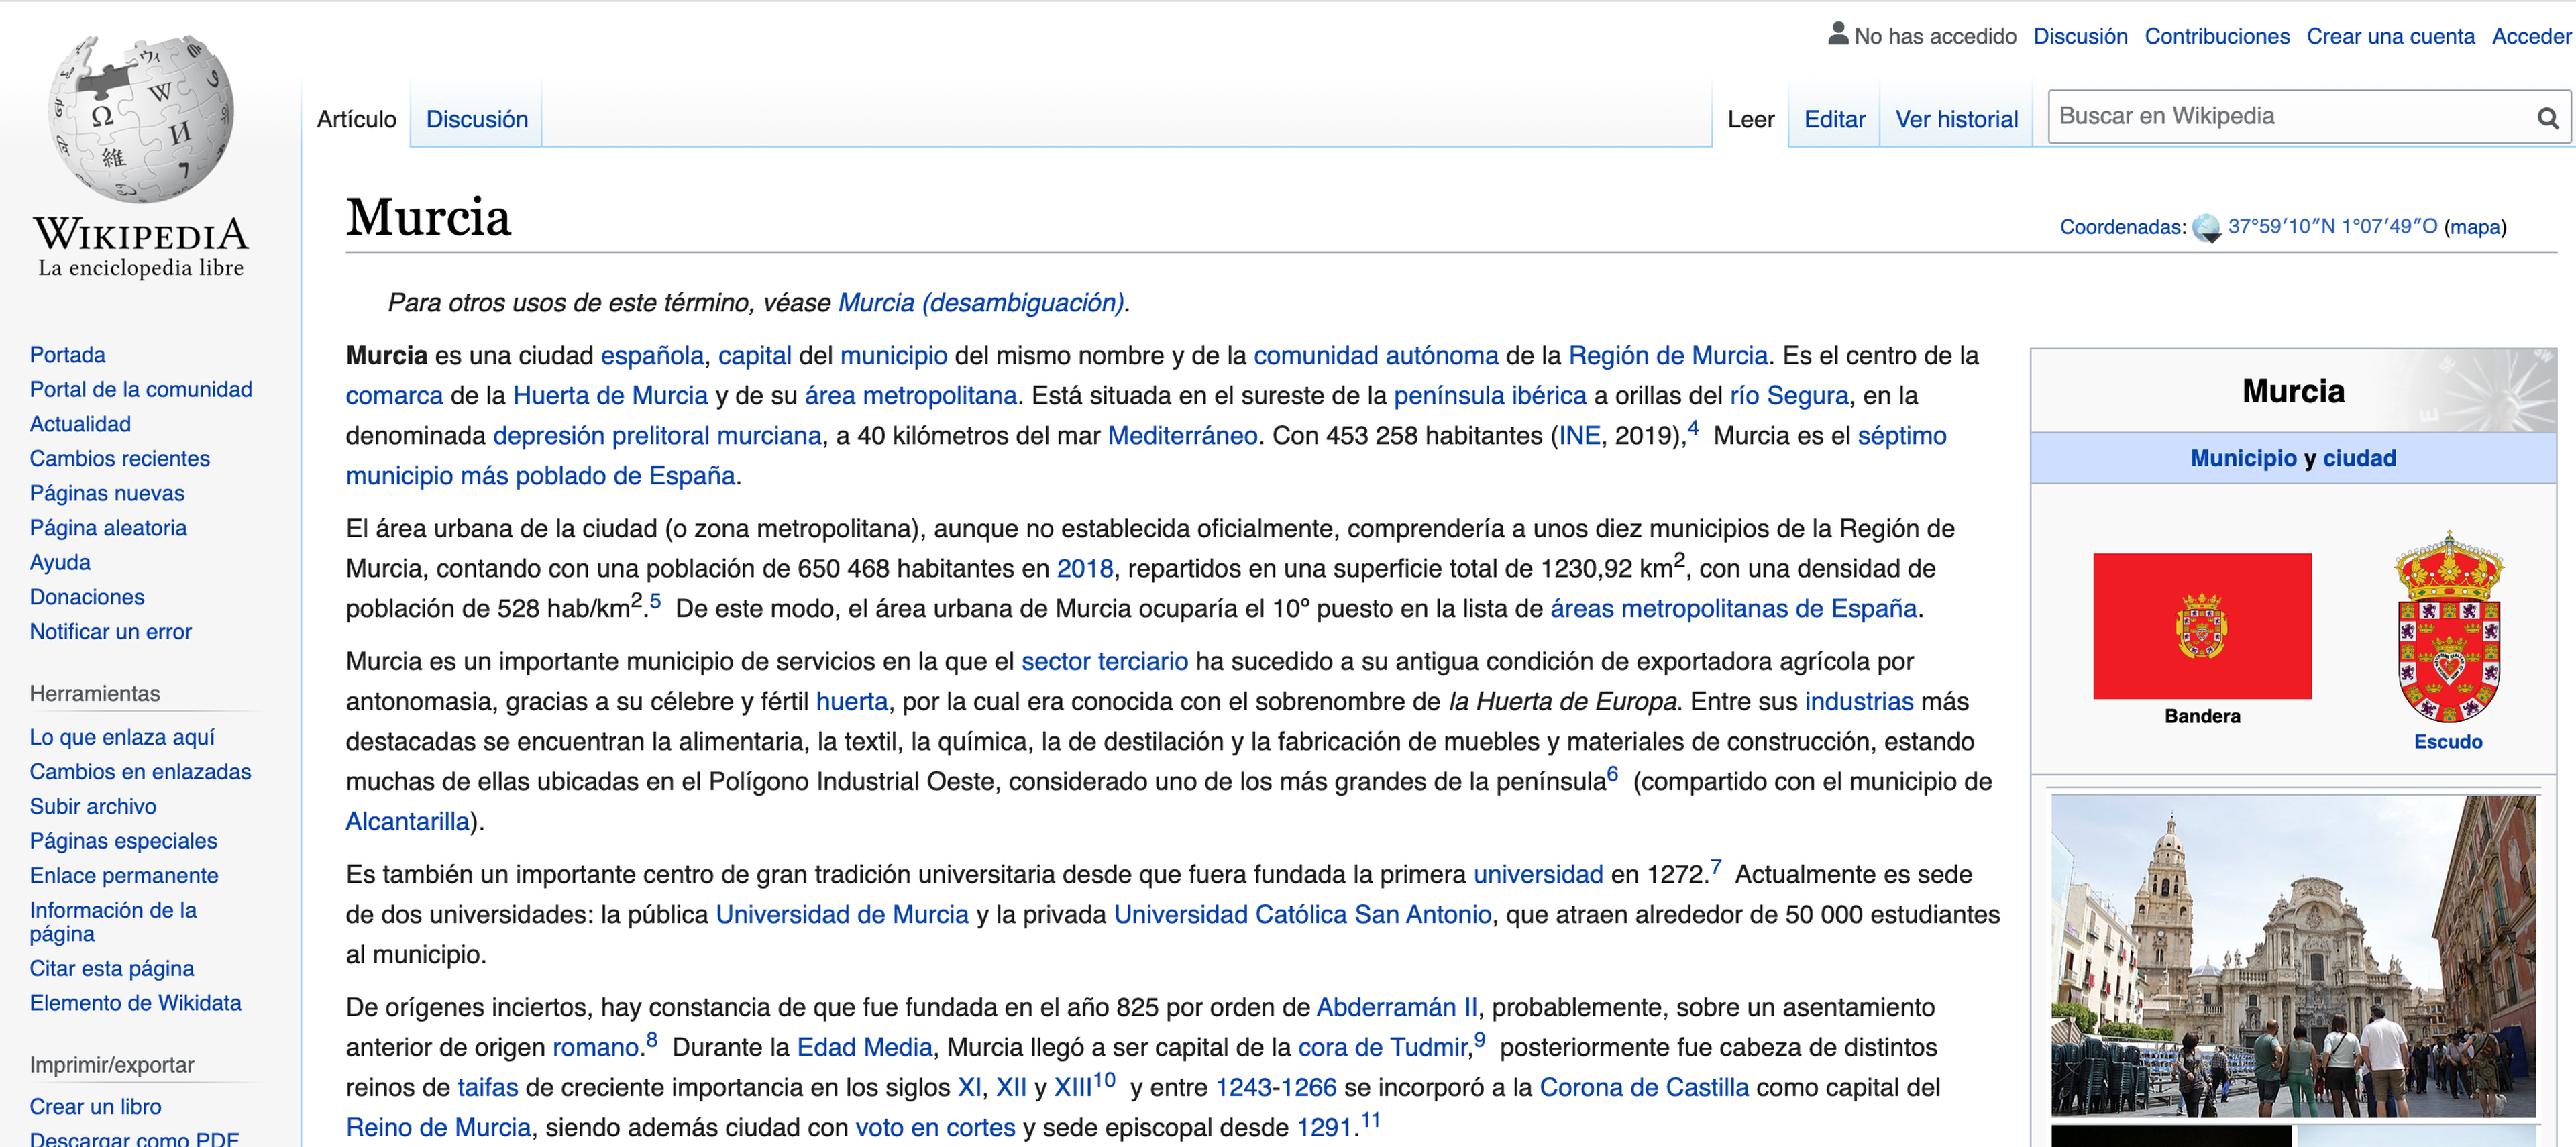 La entrada de Murcia en Wikipedia fue una de las editadas para el estudio.